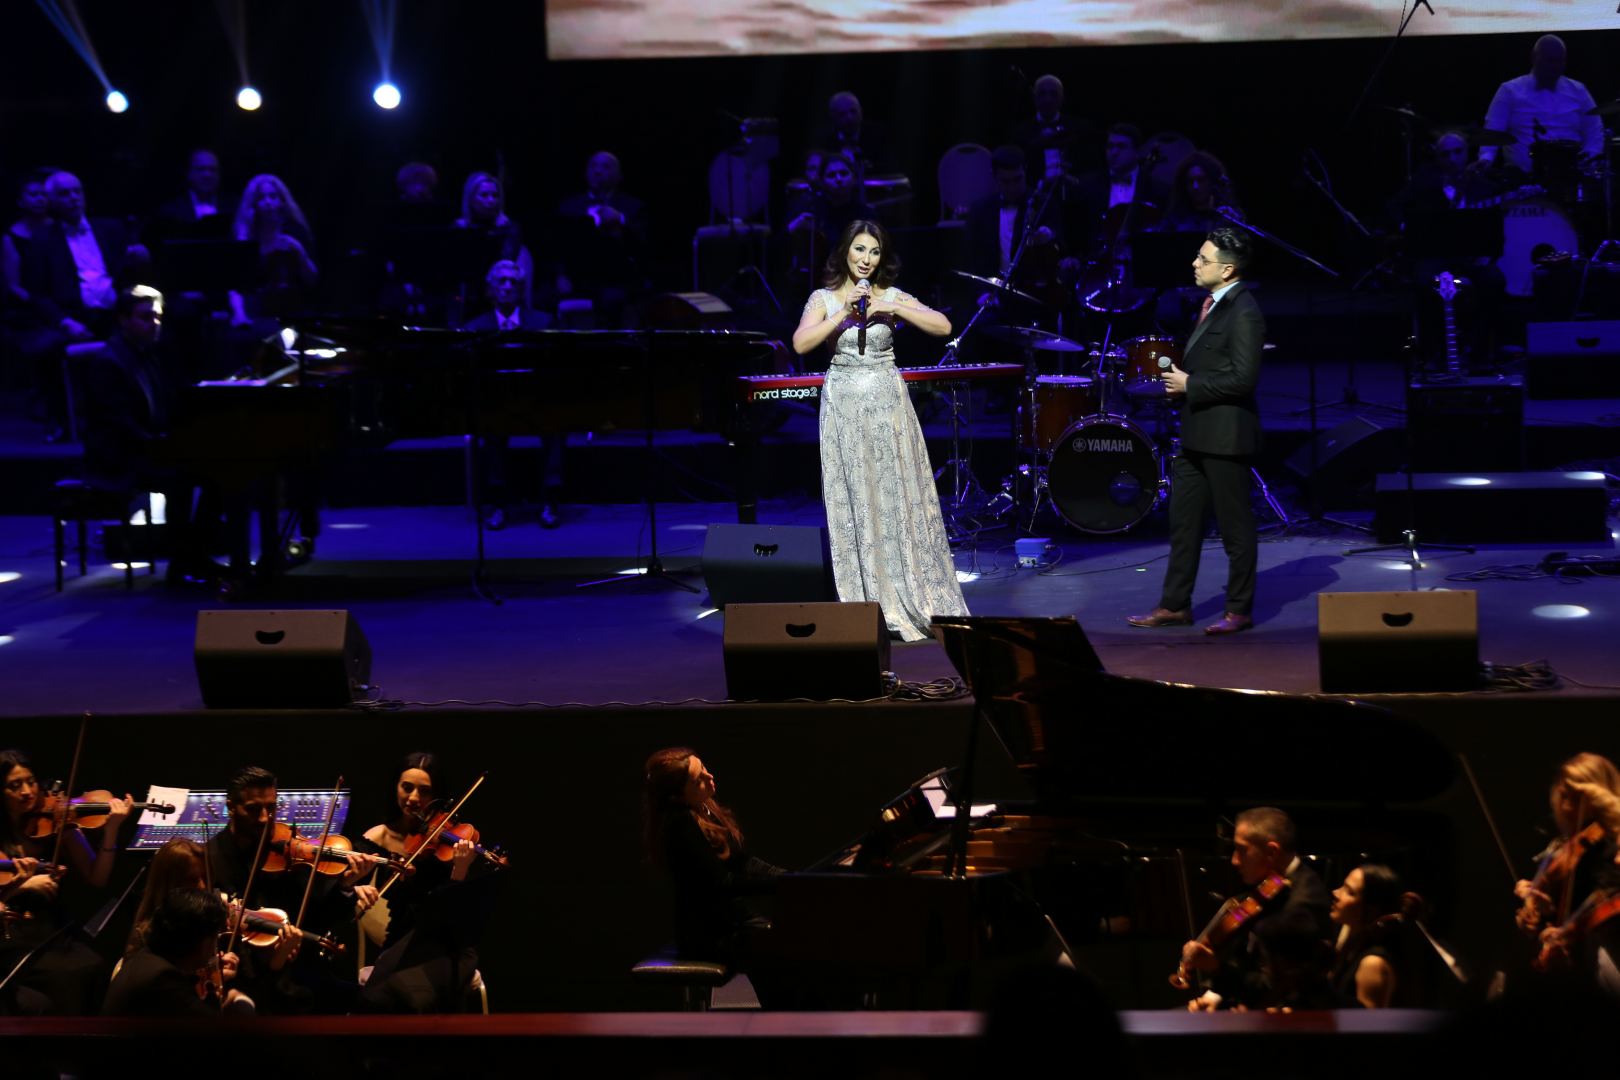 В Баку прошел эстрадно-джазовый концерт, посвященный 100-летию Рауфа Гаджиева  (ВИДЕО, ФОТО)